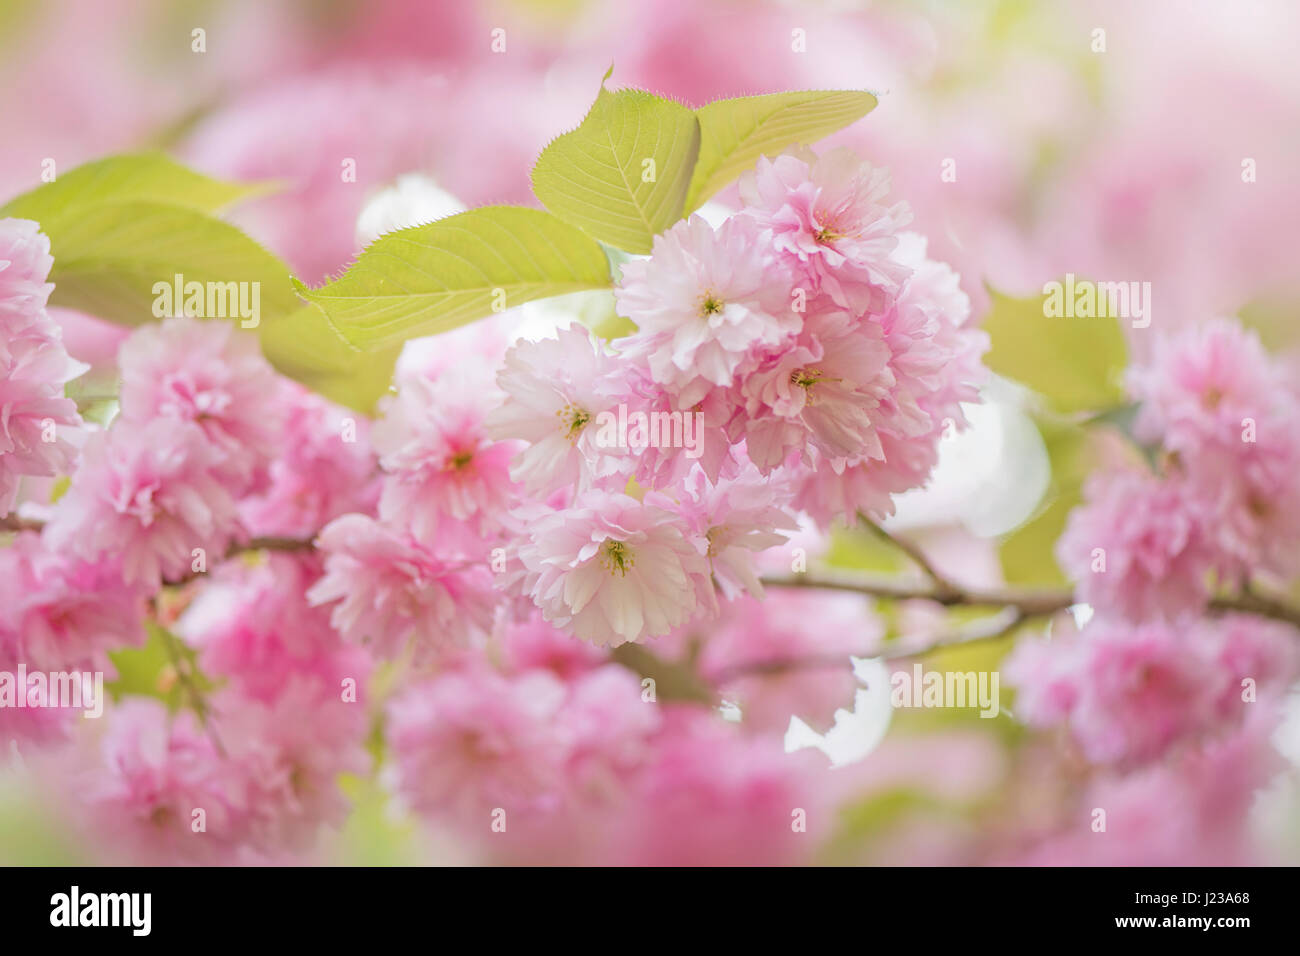 La belle rose à fleurs de printemps, de fleurs de cerisier Prunus 'Kanzan' un Japanese flowering cherry tree. Banque D'Images